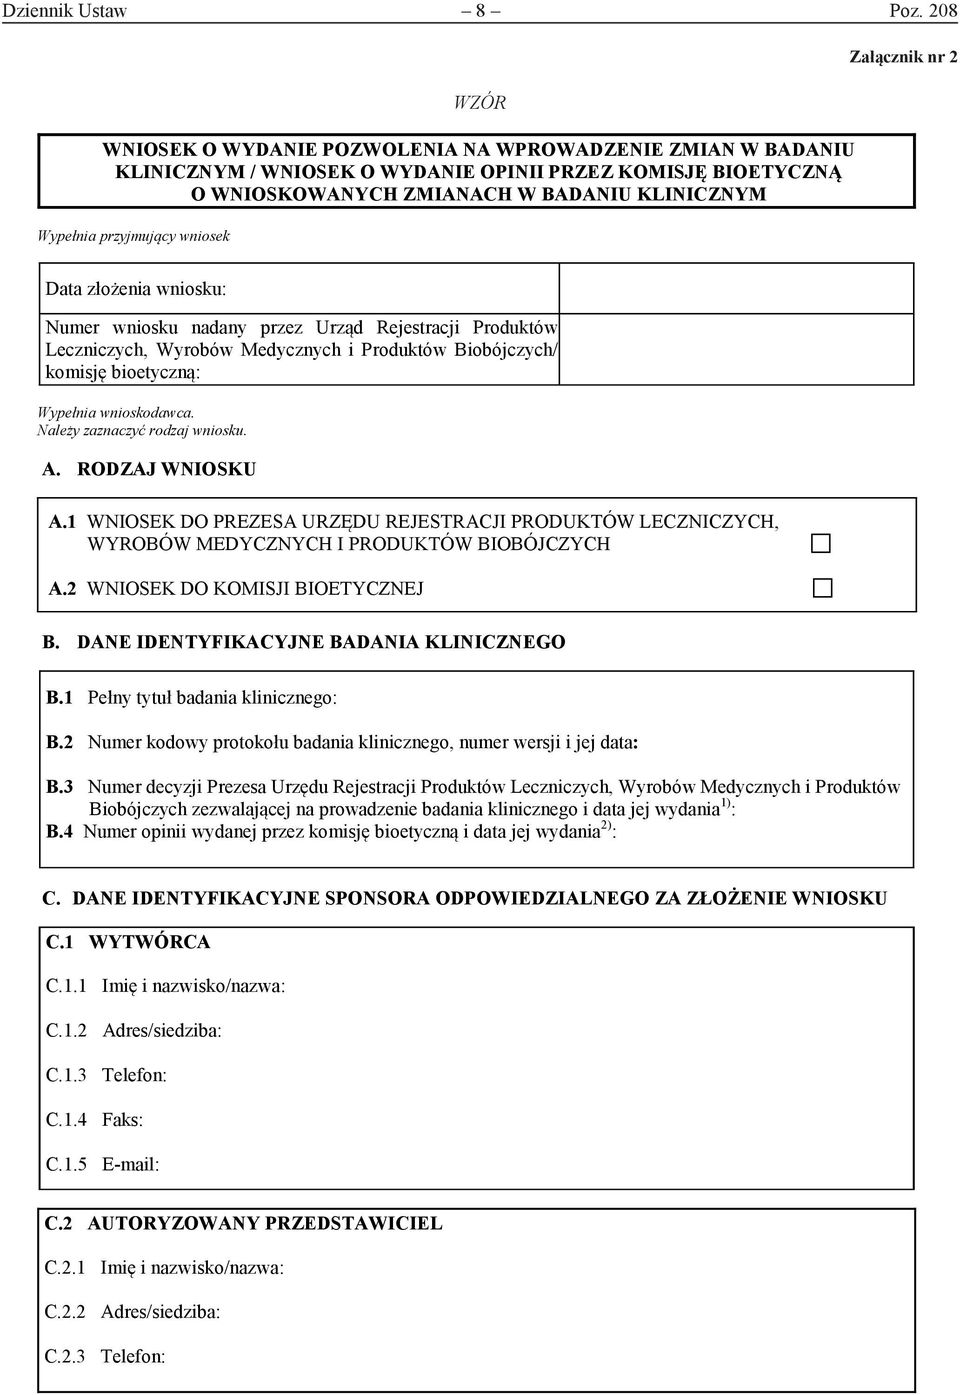 wniosek WZÓR Załącznik nr 2 Data złożenia wniosku: Numer wniosku nadany przez Urząd Rejestracji Produktów Leczniczych, Wyrobów Medycznych i Produktów Biobójczych/ komisję bioetyczną: Wypełnia